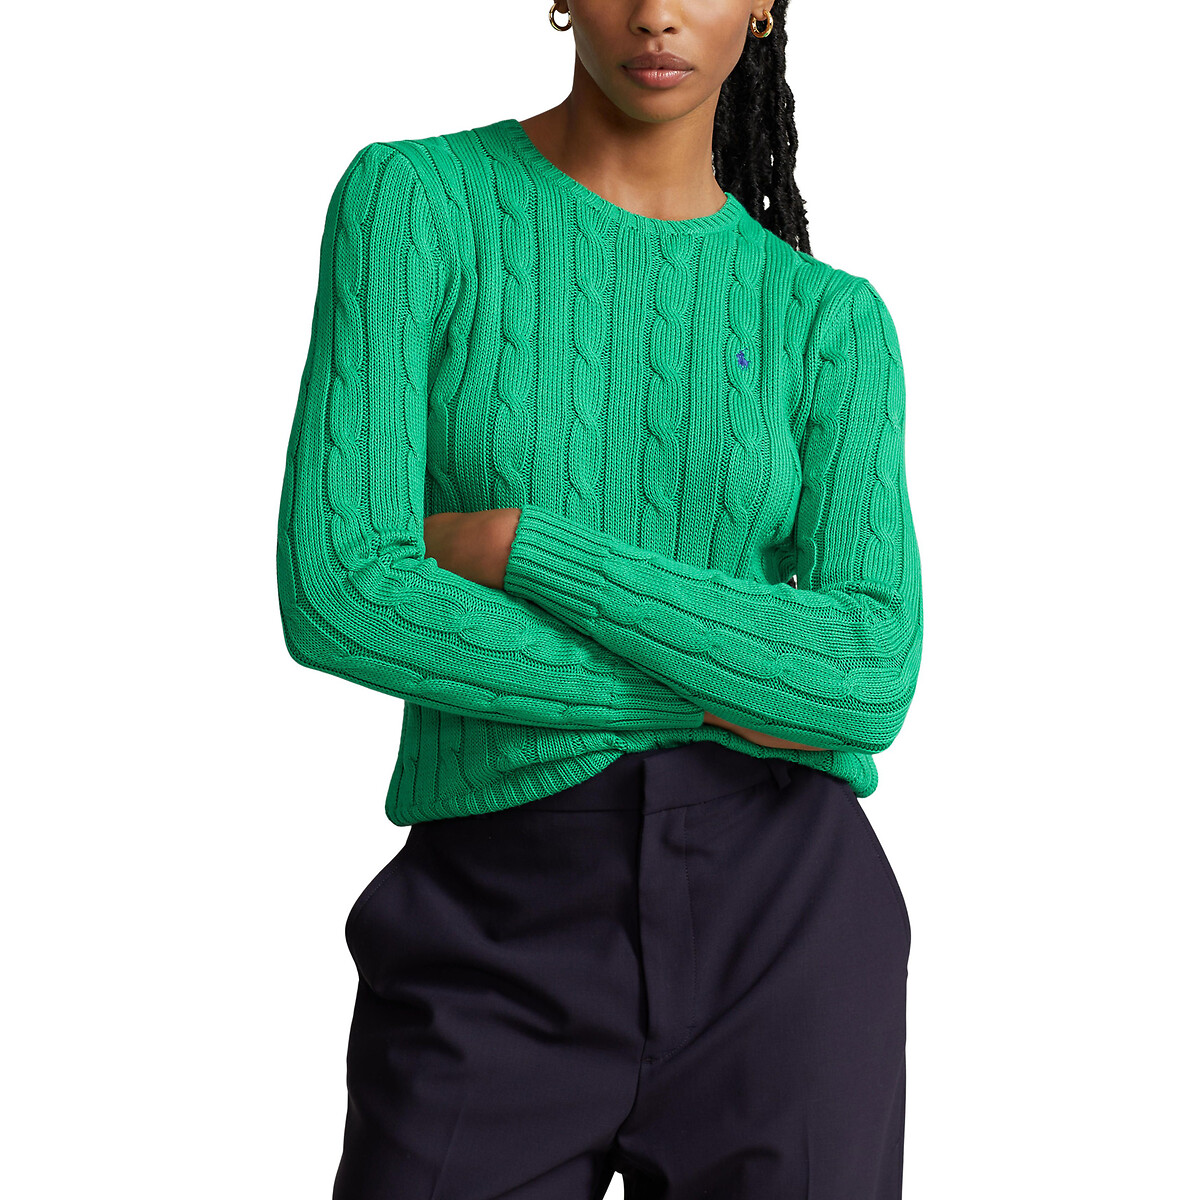 Пуловер Julianna из витого трикотажа с круглым вырезом M зеленый пуловер с высоким воротником из трикотажа с витым узором